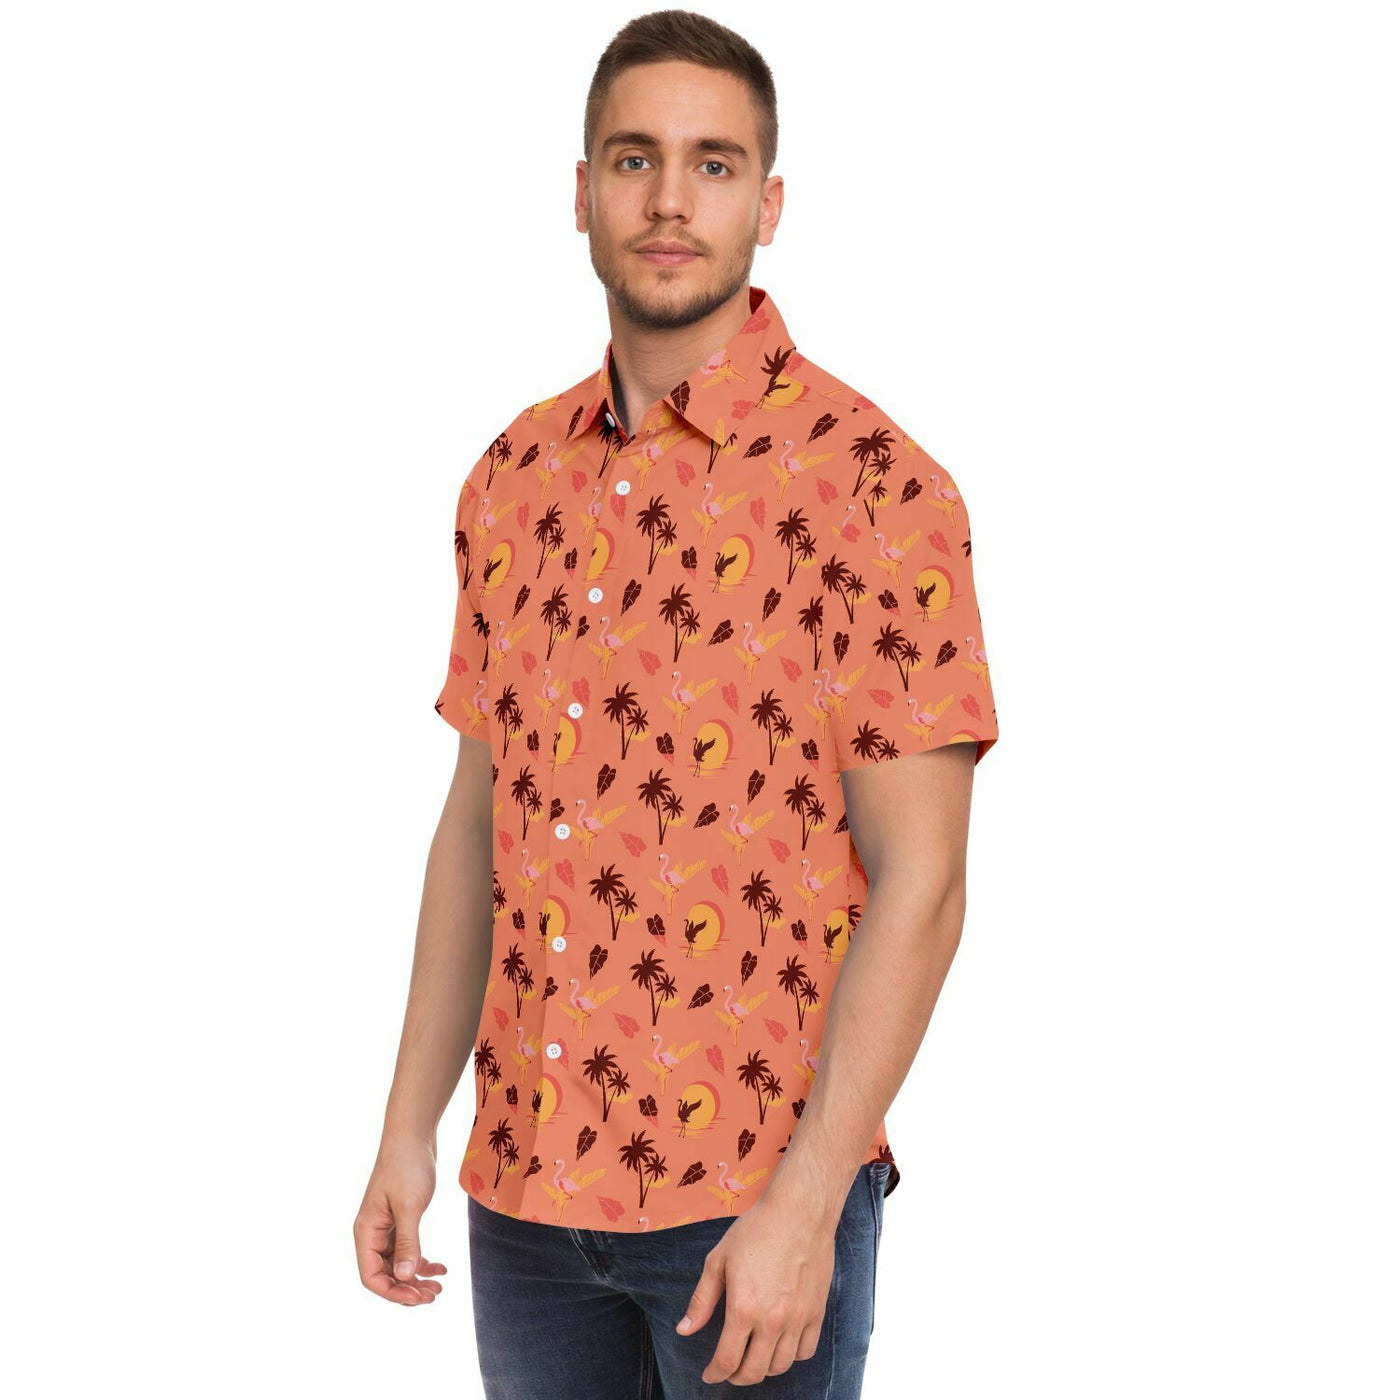 Flamingo Tropical Sunset Hawaiian Shirt